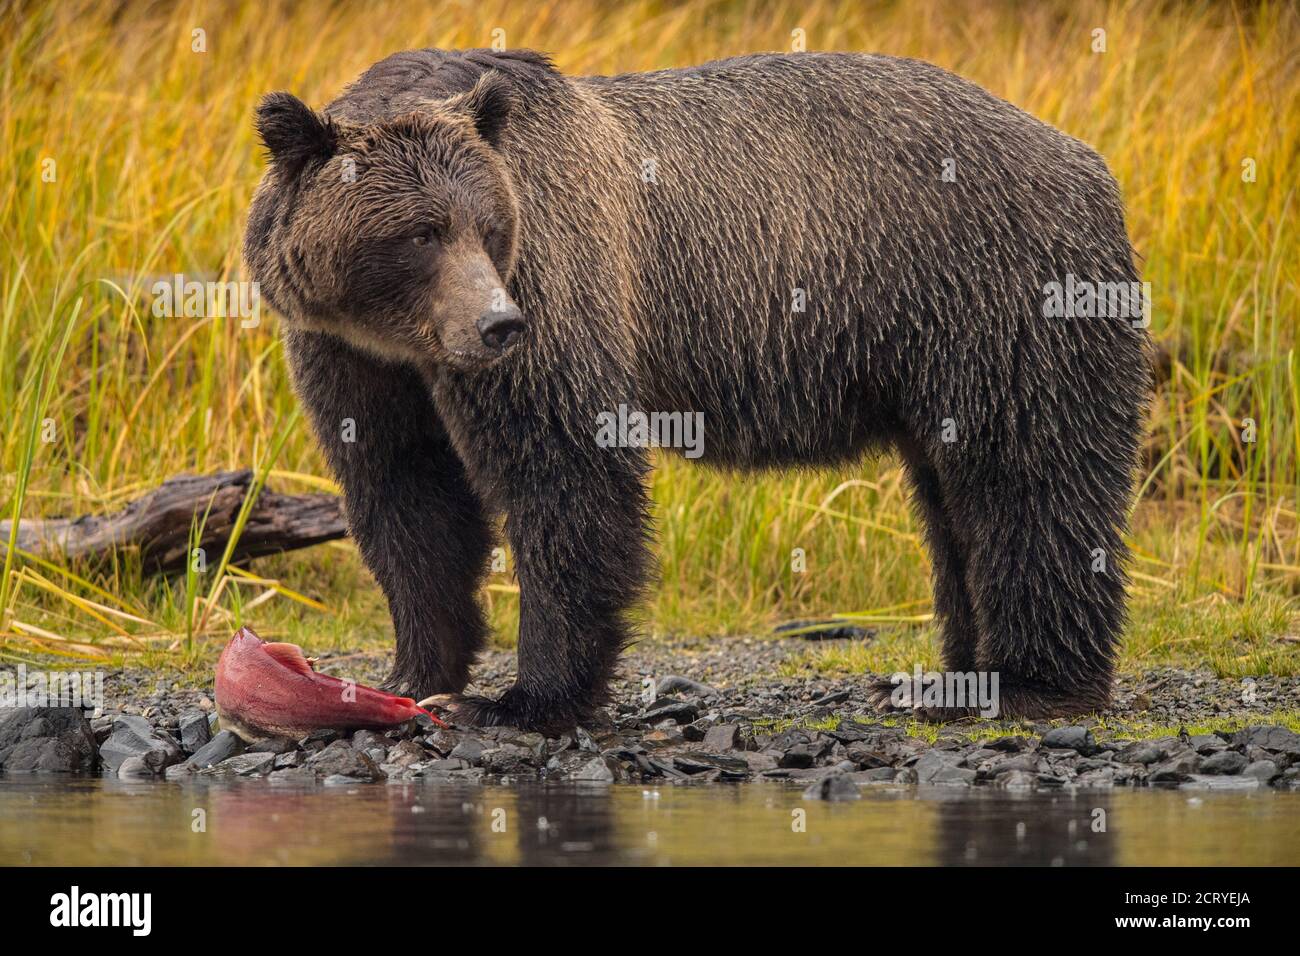 Ours grizzli (Ursus arctos) CUB de première année suivant la mère le long d'une rivière à saumon, Chilcotin Wilderness, BC Interior, Canada Banque D'Images